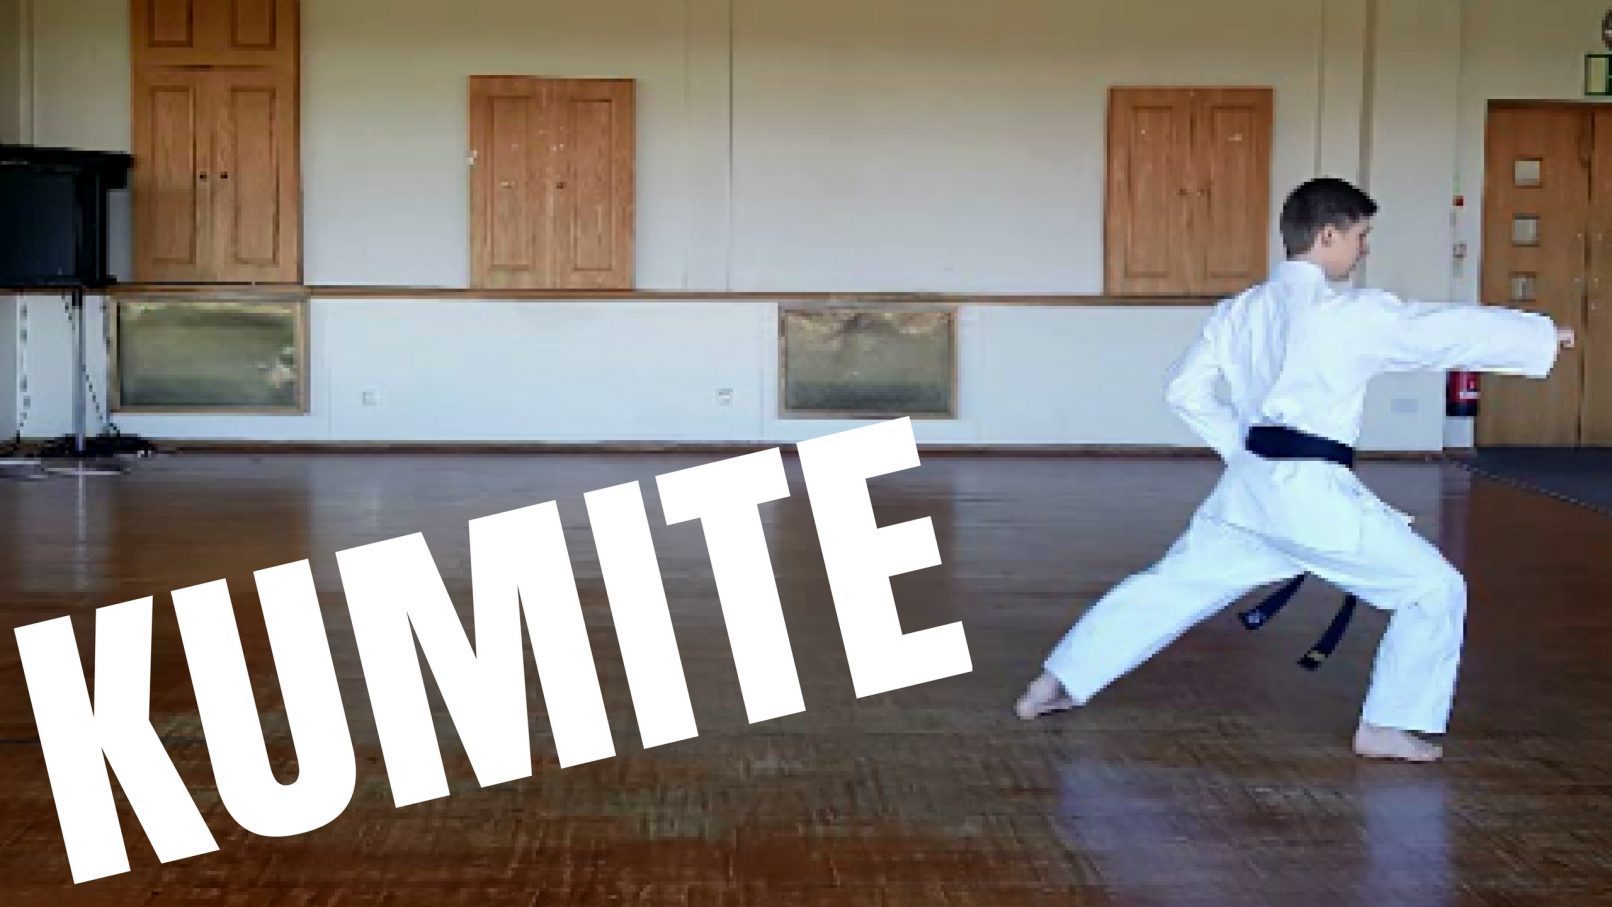 What is Kumite?